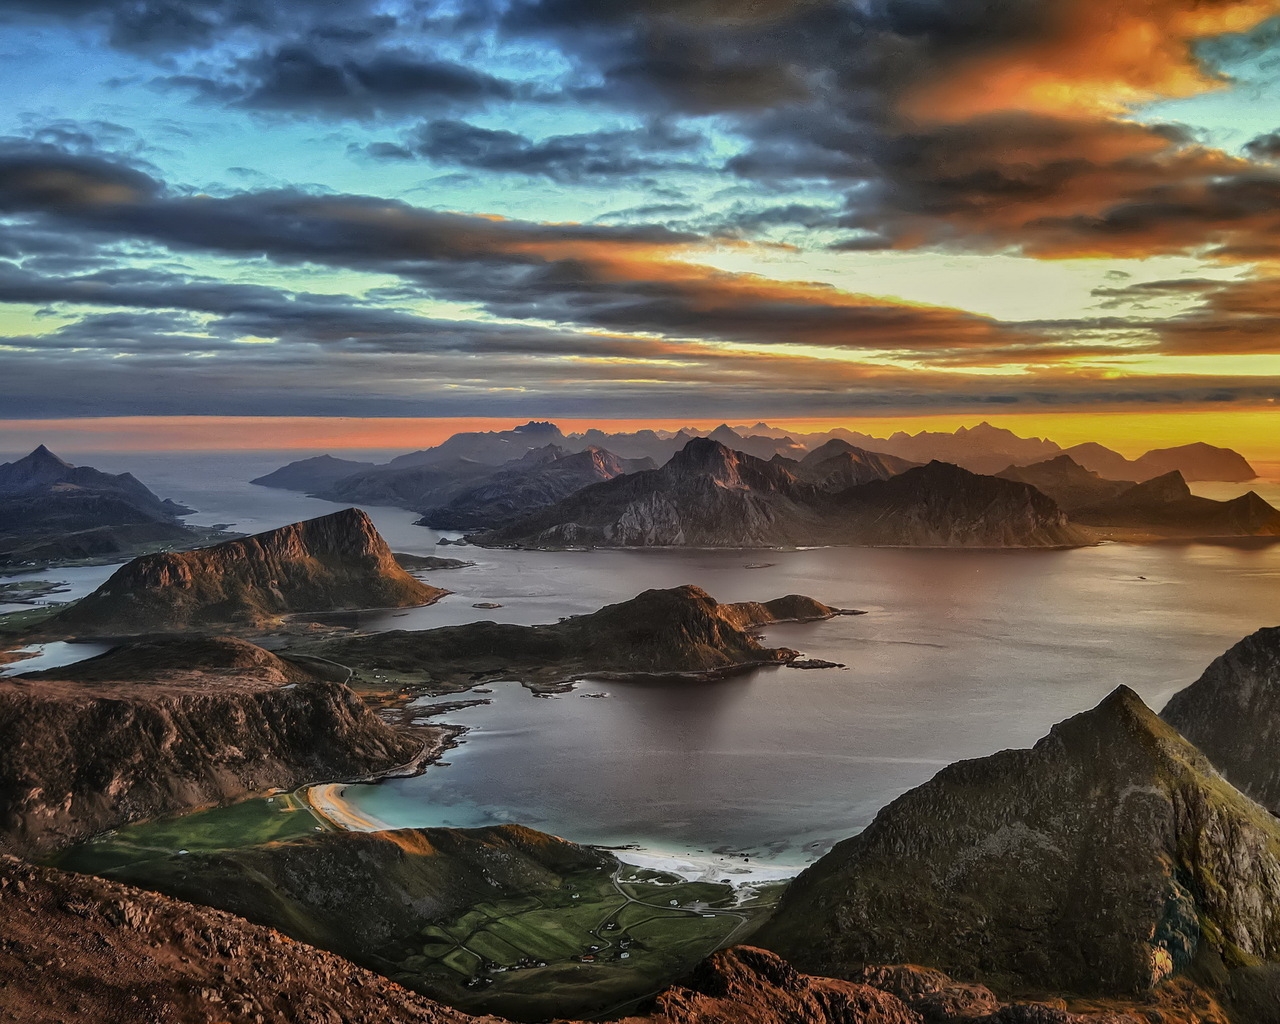 Lofoten Islands Sunset for 1280 x 1024 resolution